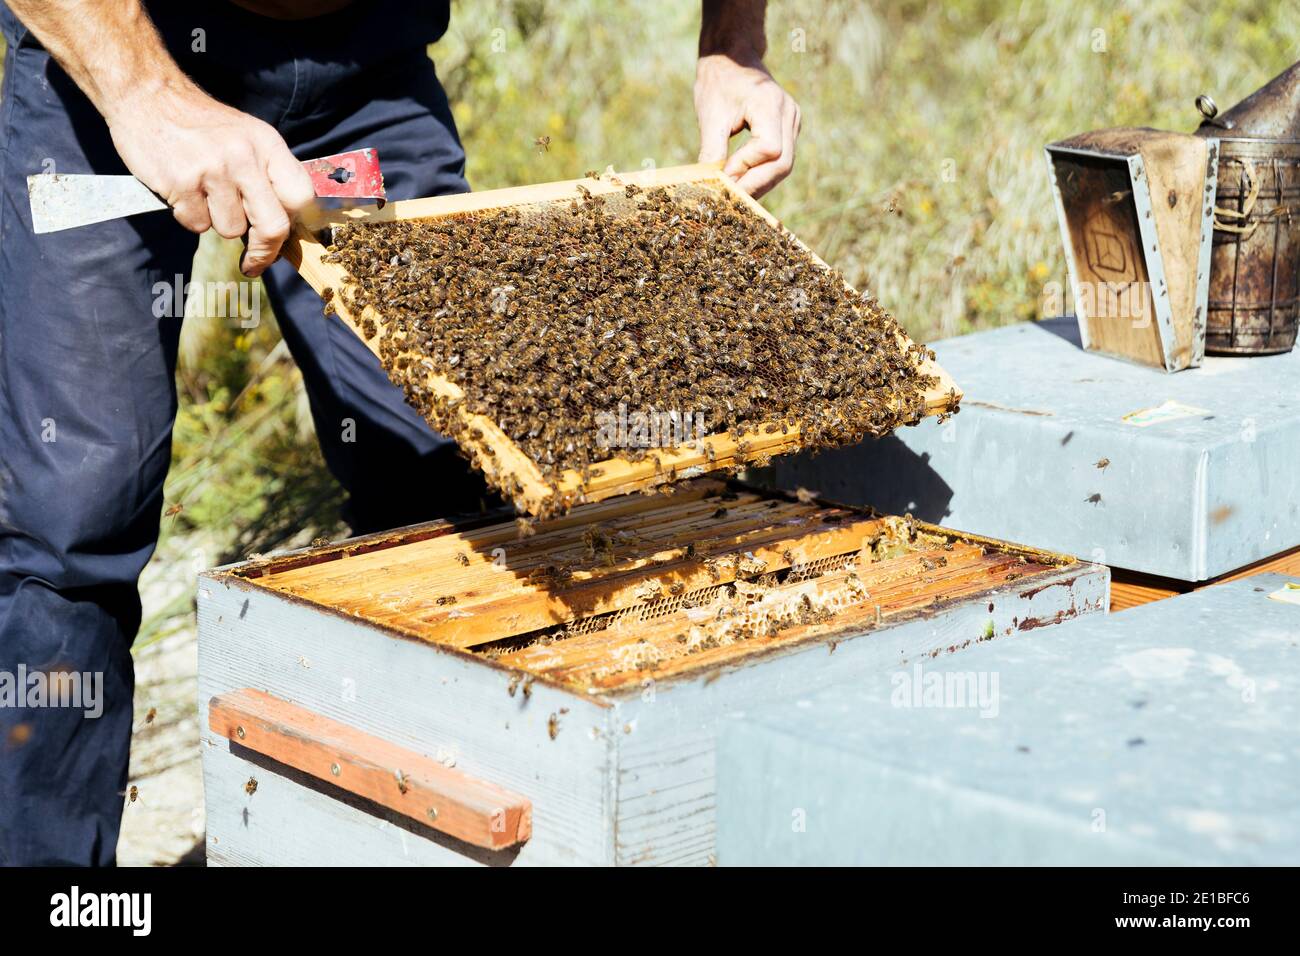 Apiculture à Beaucaire (sud-est de la France) : abeilles sur un bâti de ruches lors d'une inspection des apicoles par un apiculteur, apiculant 'au miel occitan Banque D'Images